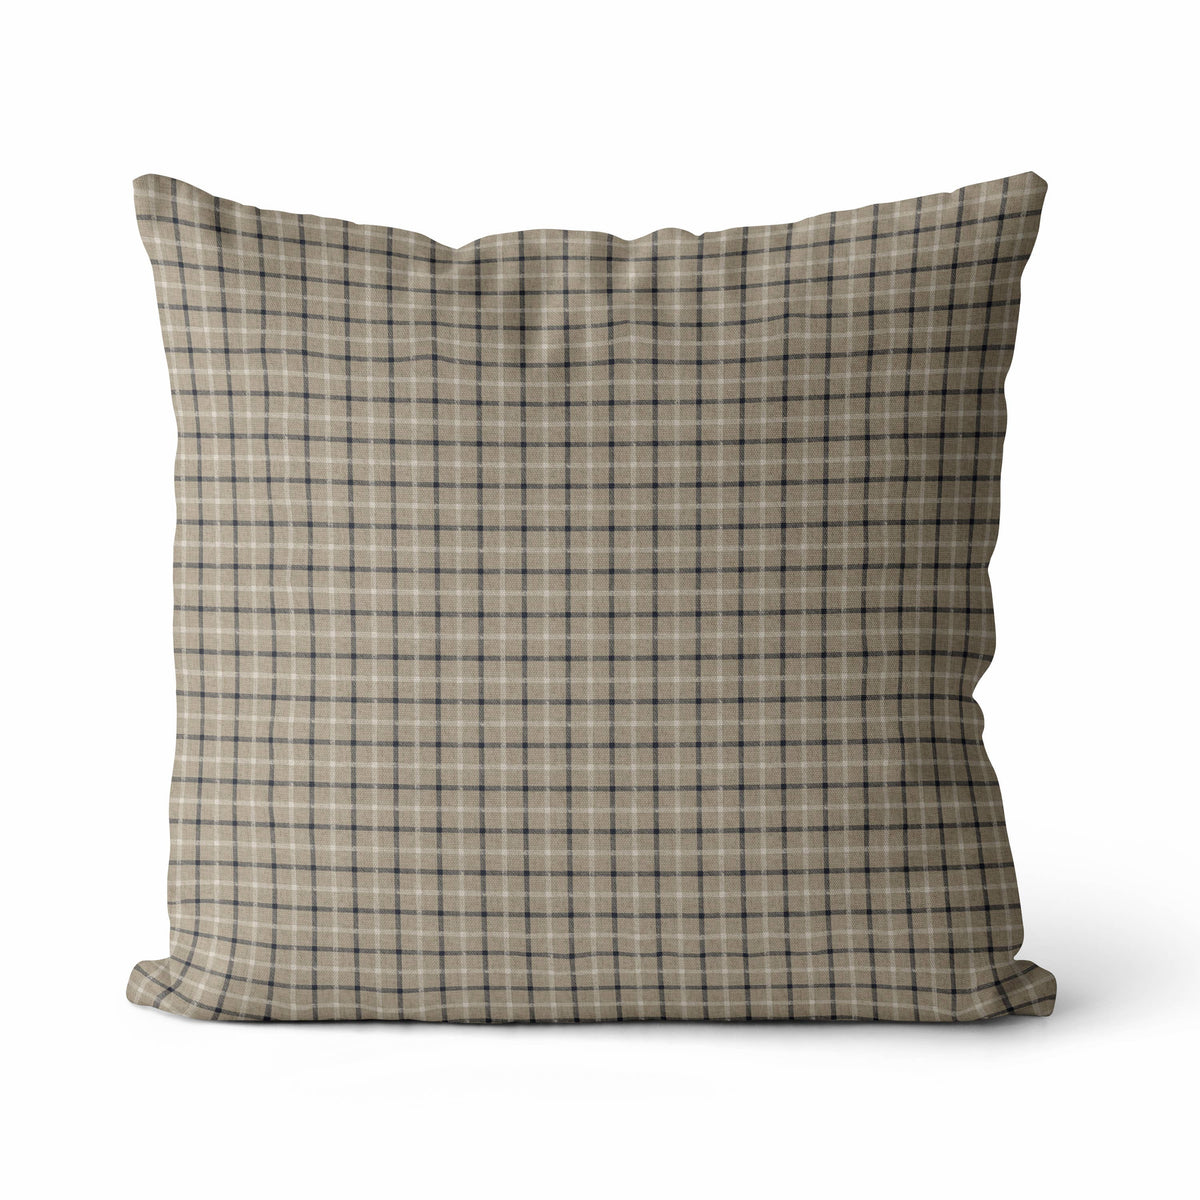 Nolan Pillow Cover | Plaid Tartan Neutral Cushion Cover: 18&quot; x 18&quot; / Off-White Back - Holistic Habitat 